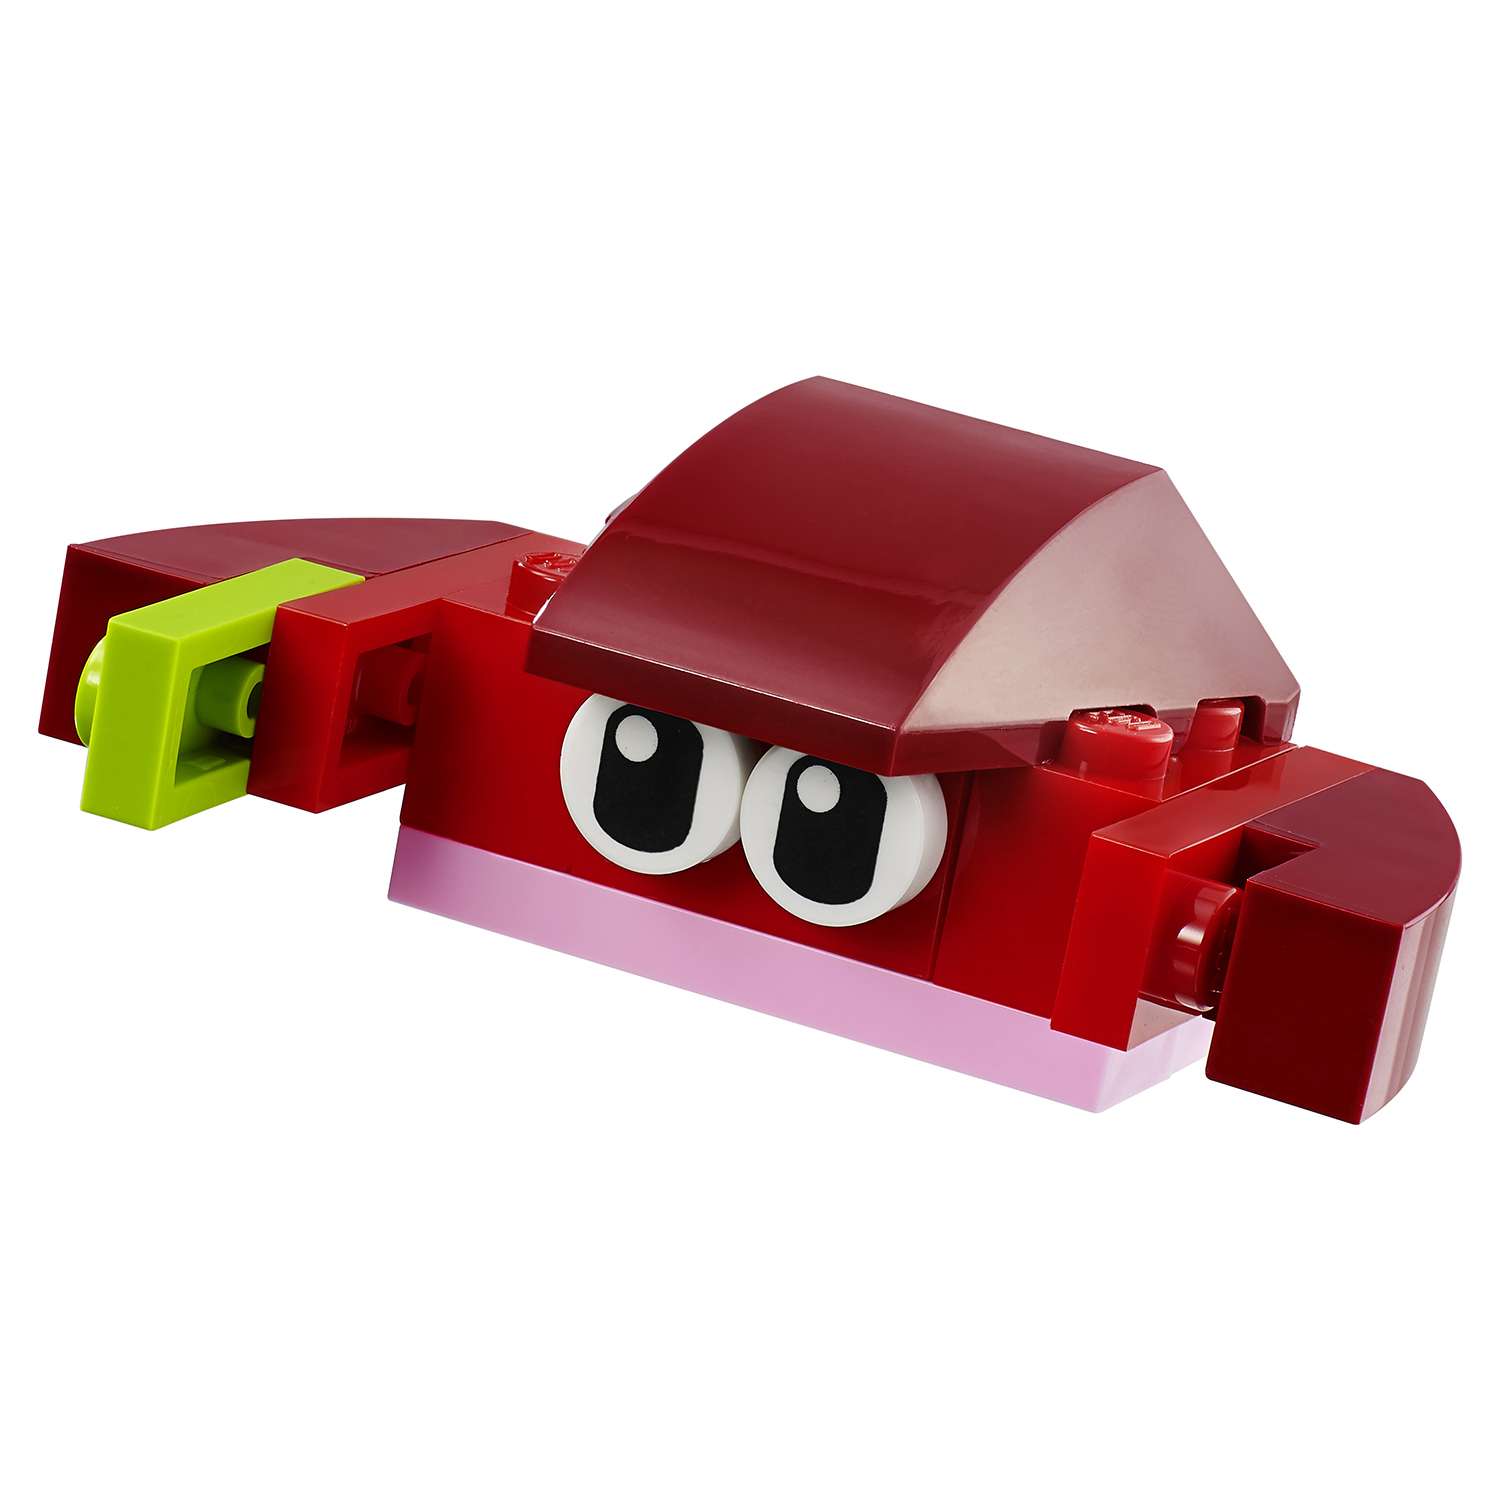 Конструктор LEGO Classic Красный набор для творчества (10707) - фото 11